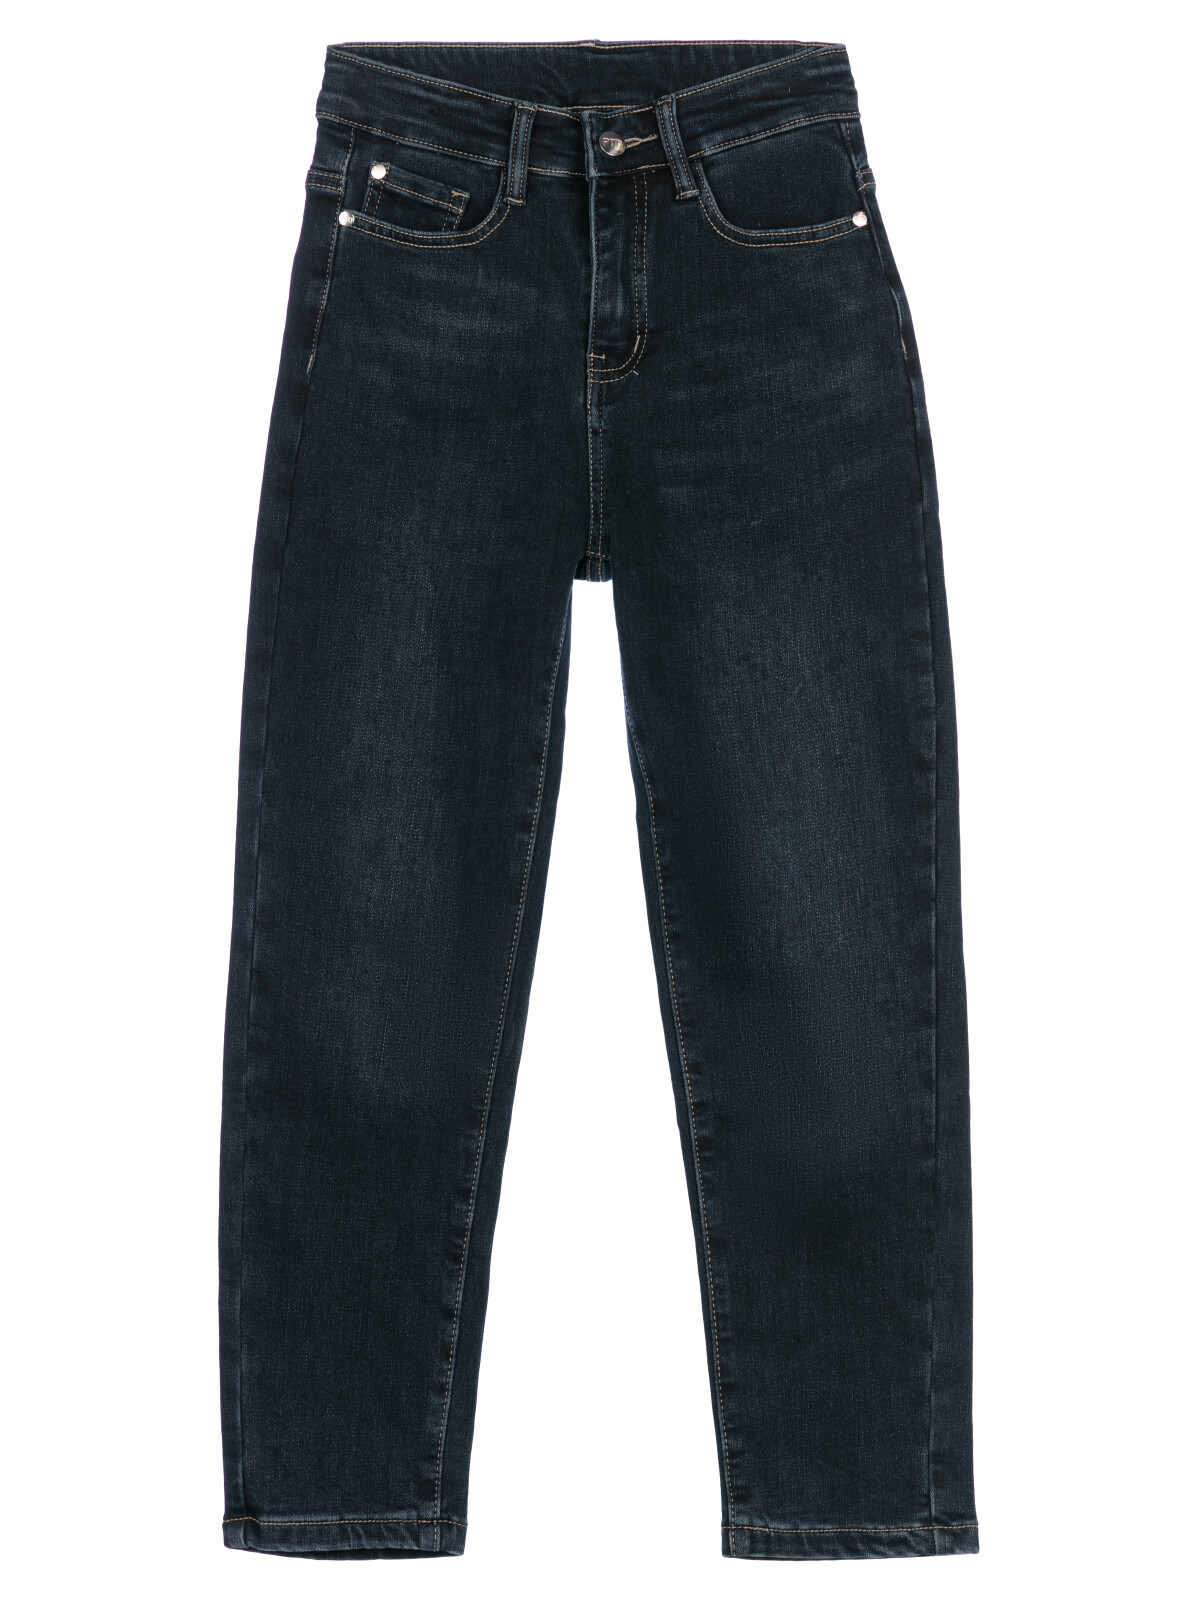 Брюки текстильные джинсовые утепленные флисом для мальчиков PlayToday, тёмно-синий, 152